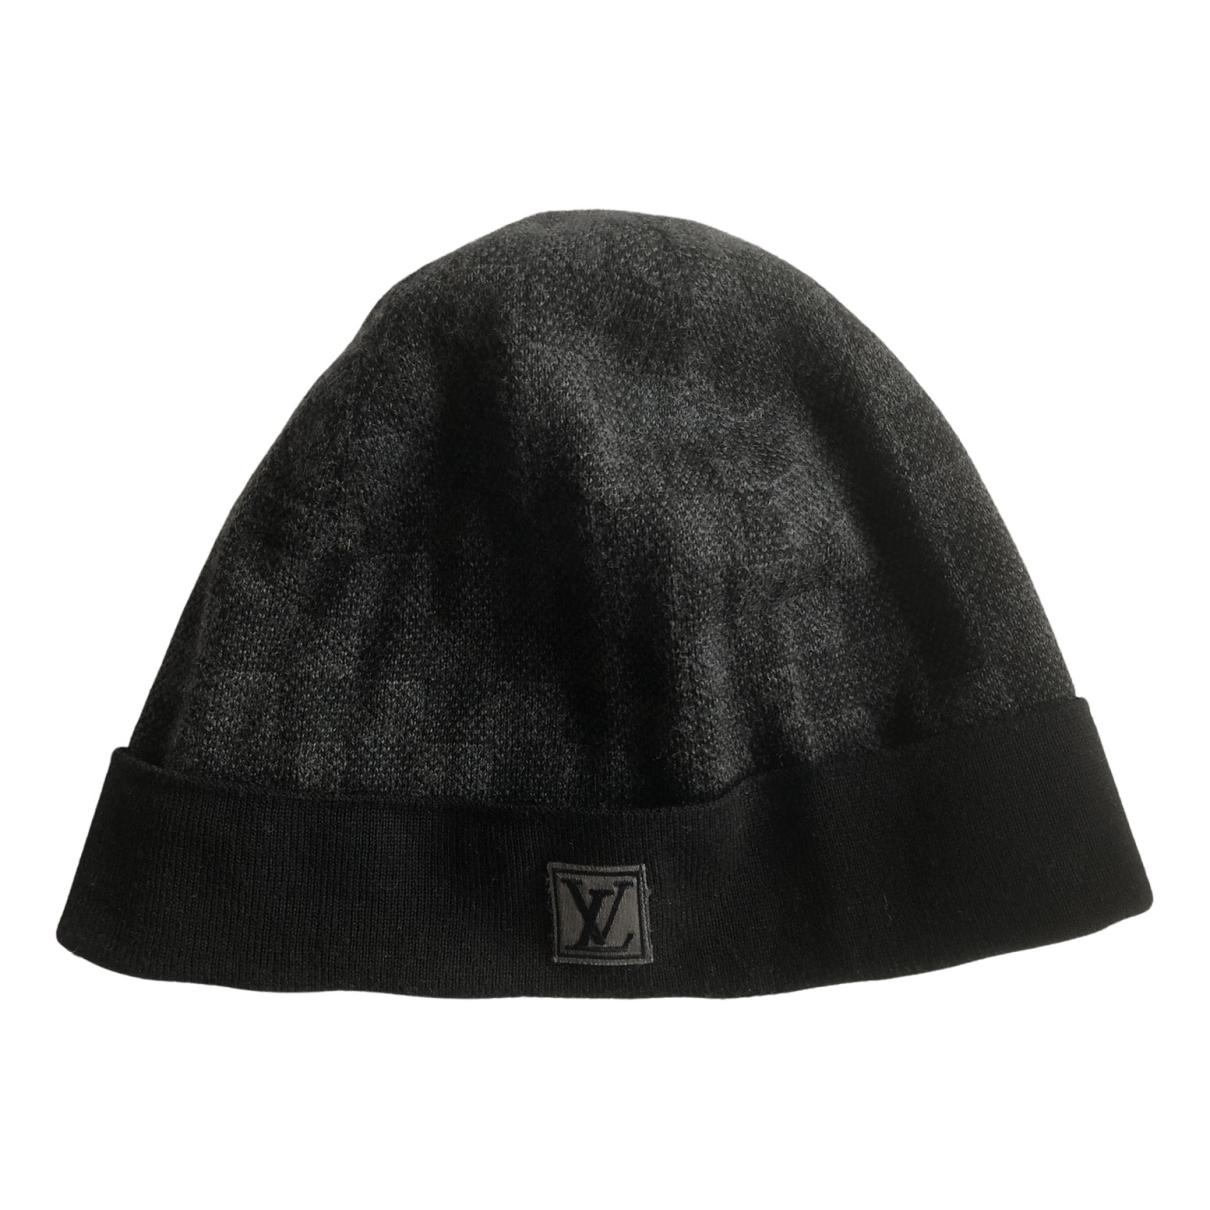 Wool hat Louis Vuitton Black size 54 cm in Wool - 23350130